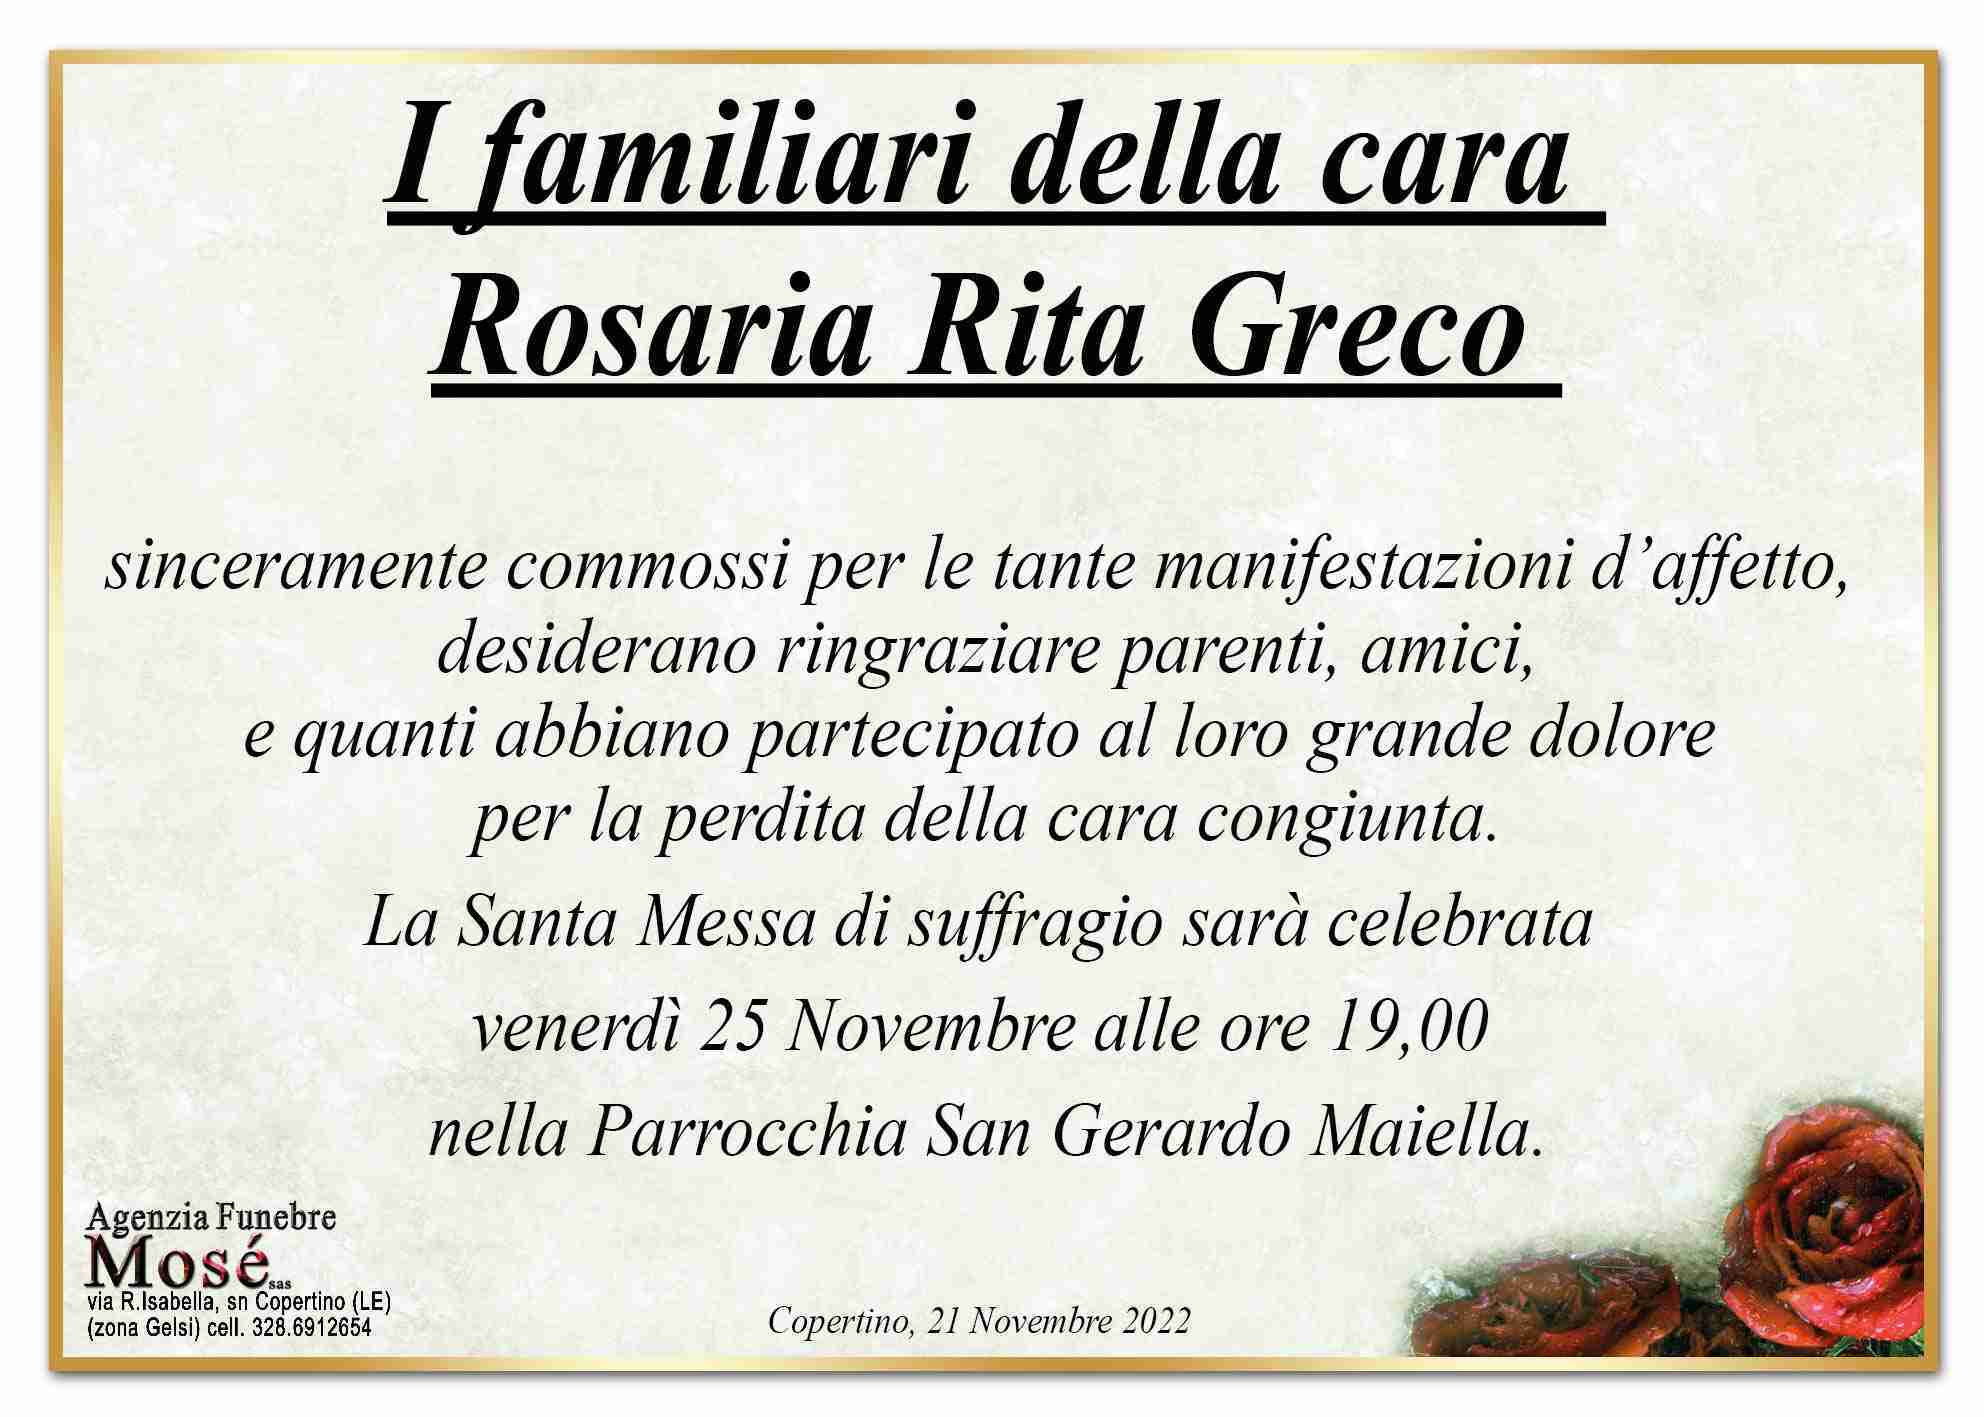 Rosaria Rita Greco